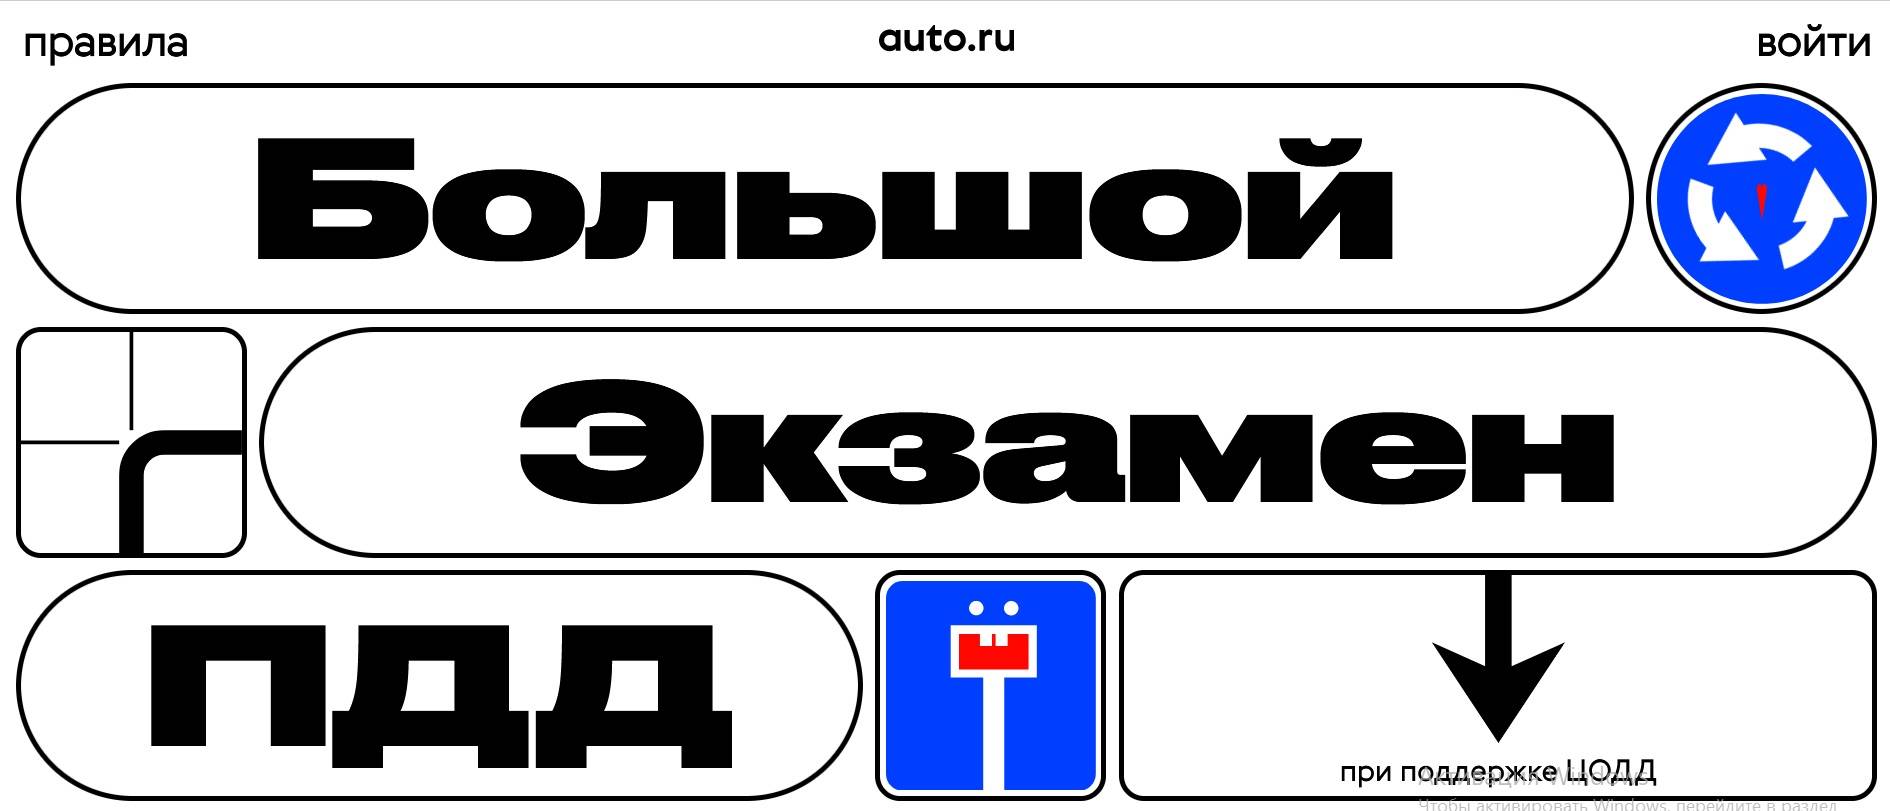 Промо-акция Auto.ru: «Большой экзамен ПДД»